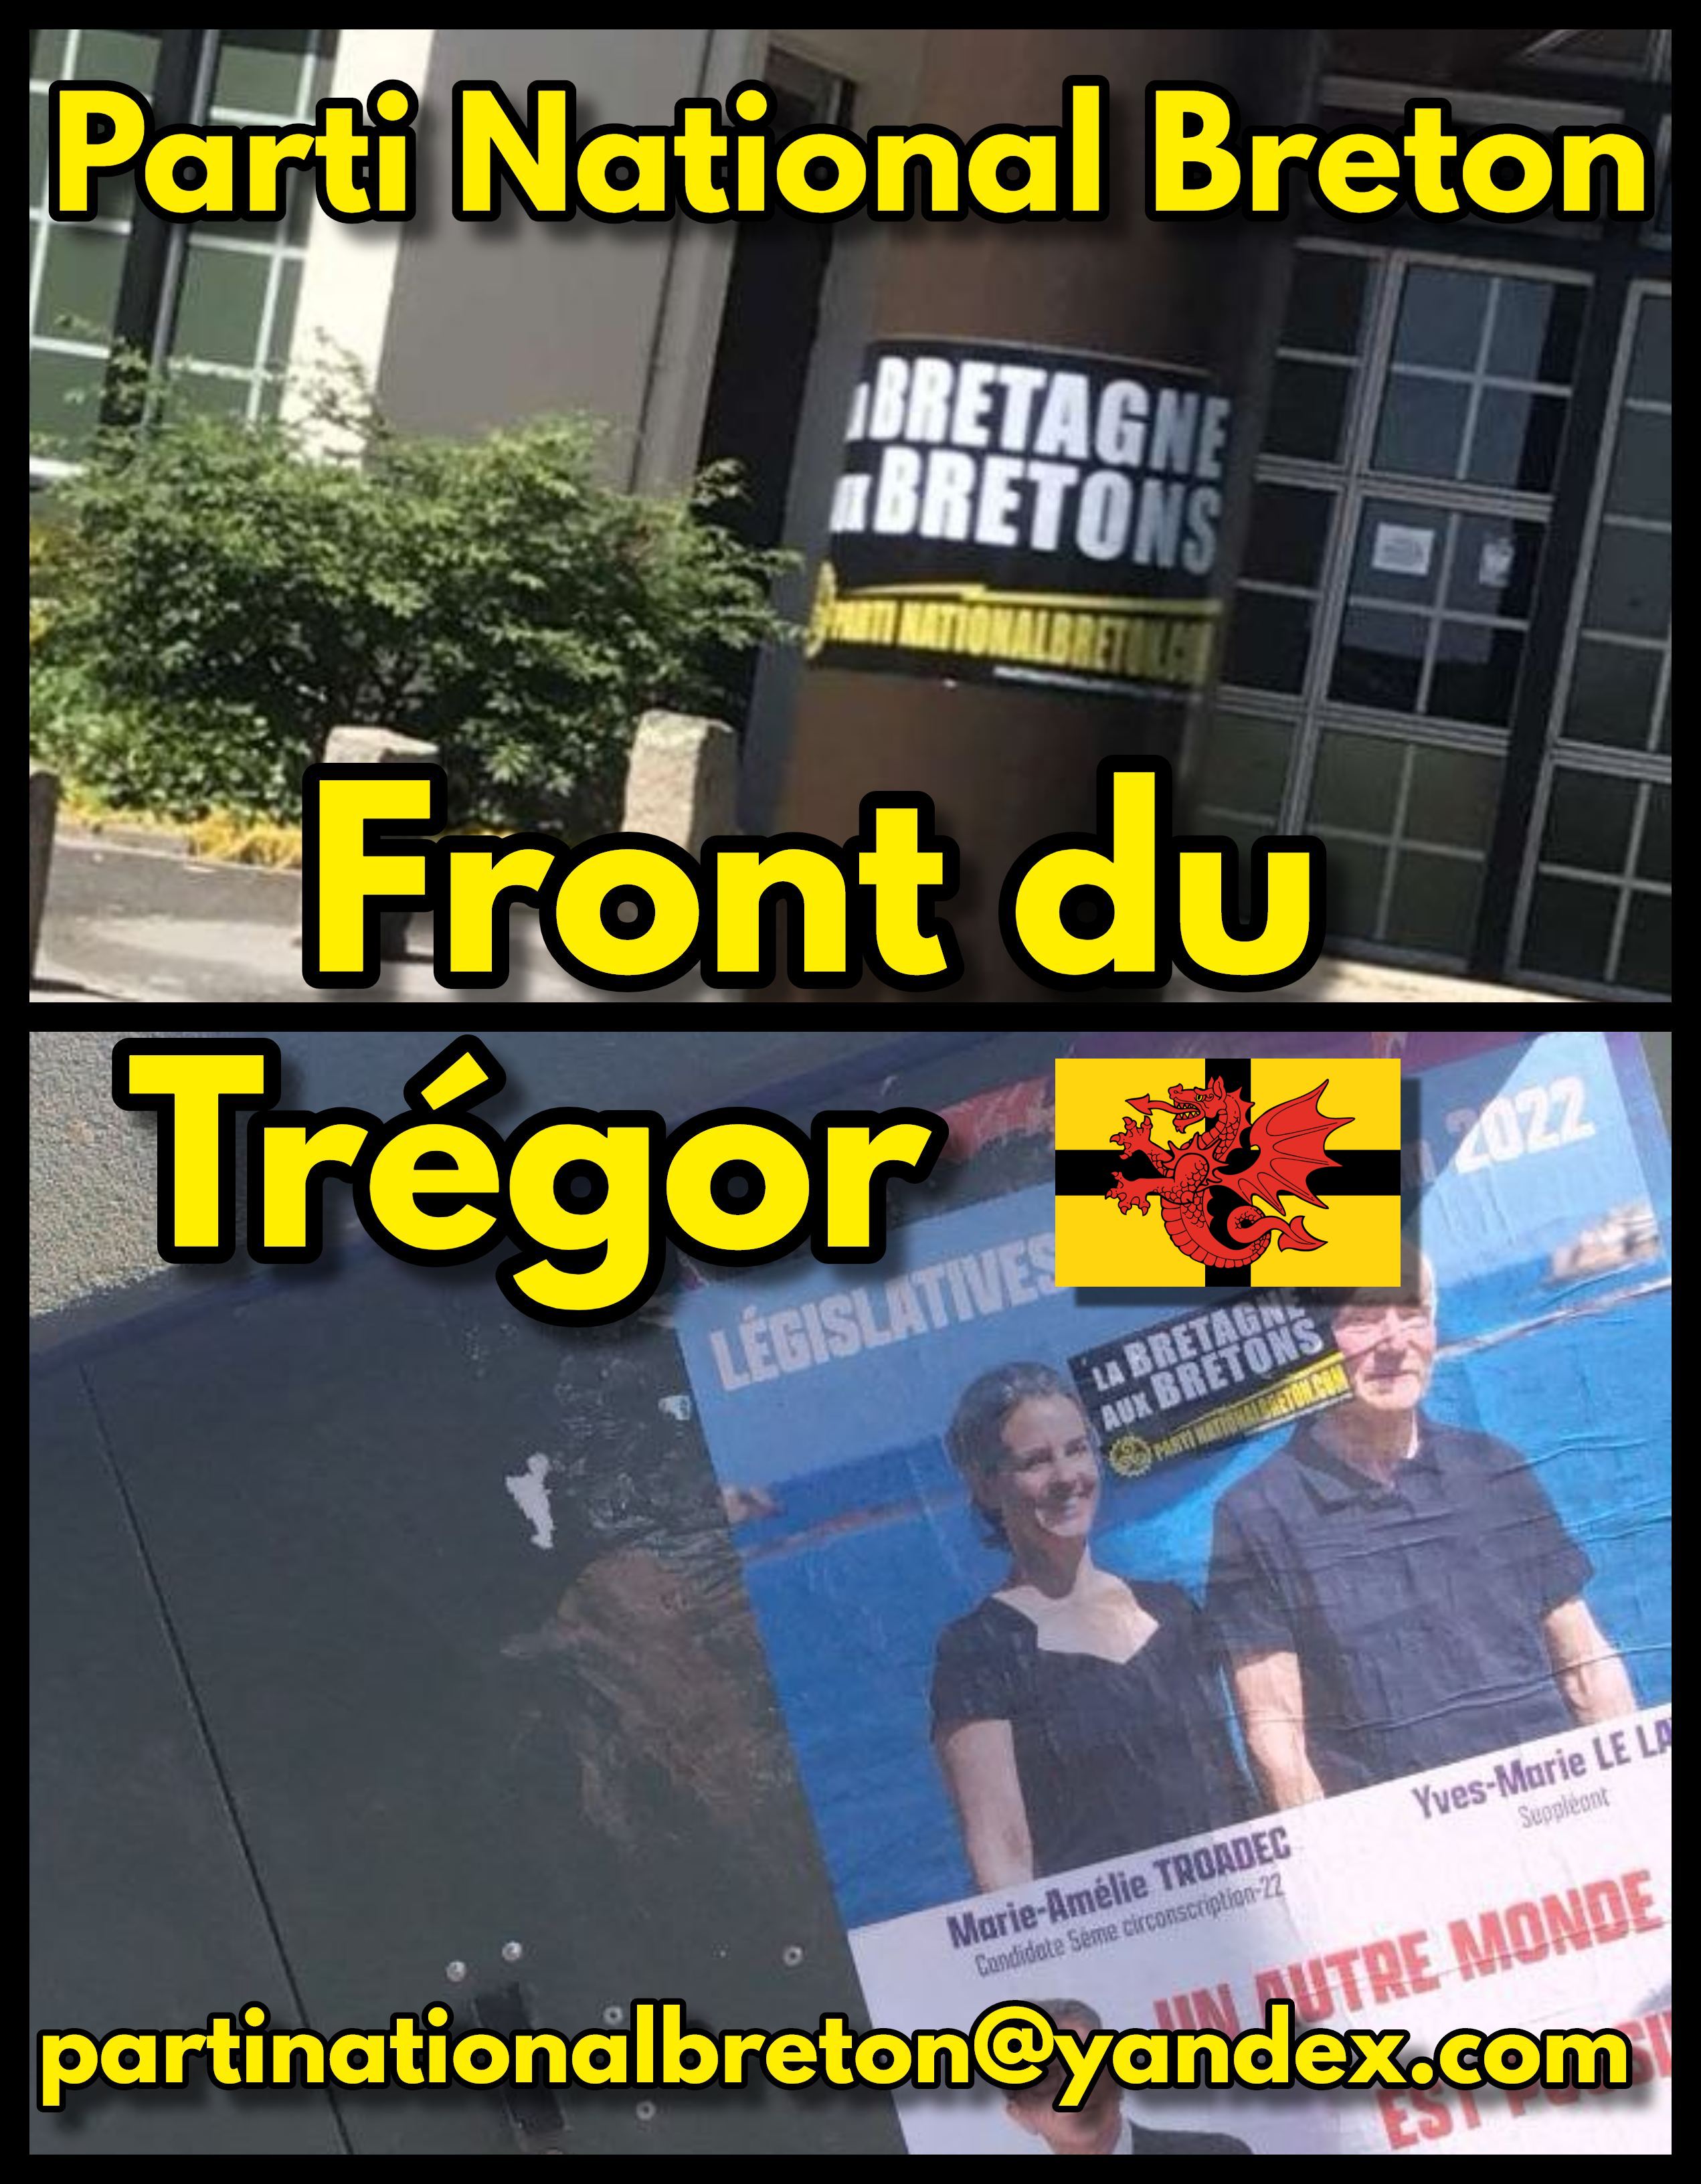 Trégor : le Parti National Breton déploie sa présence sur le terrain !